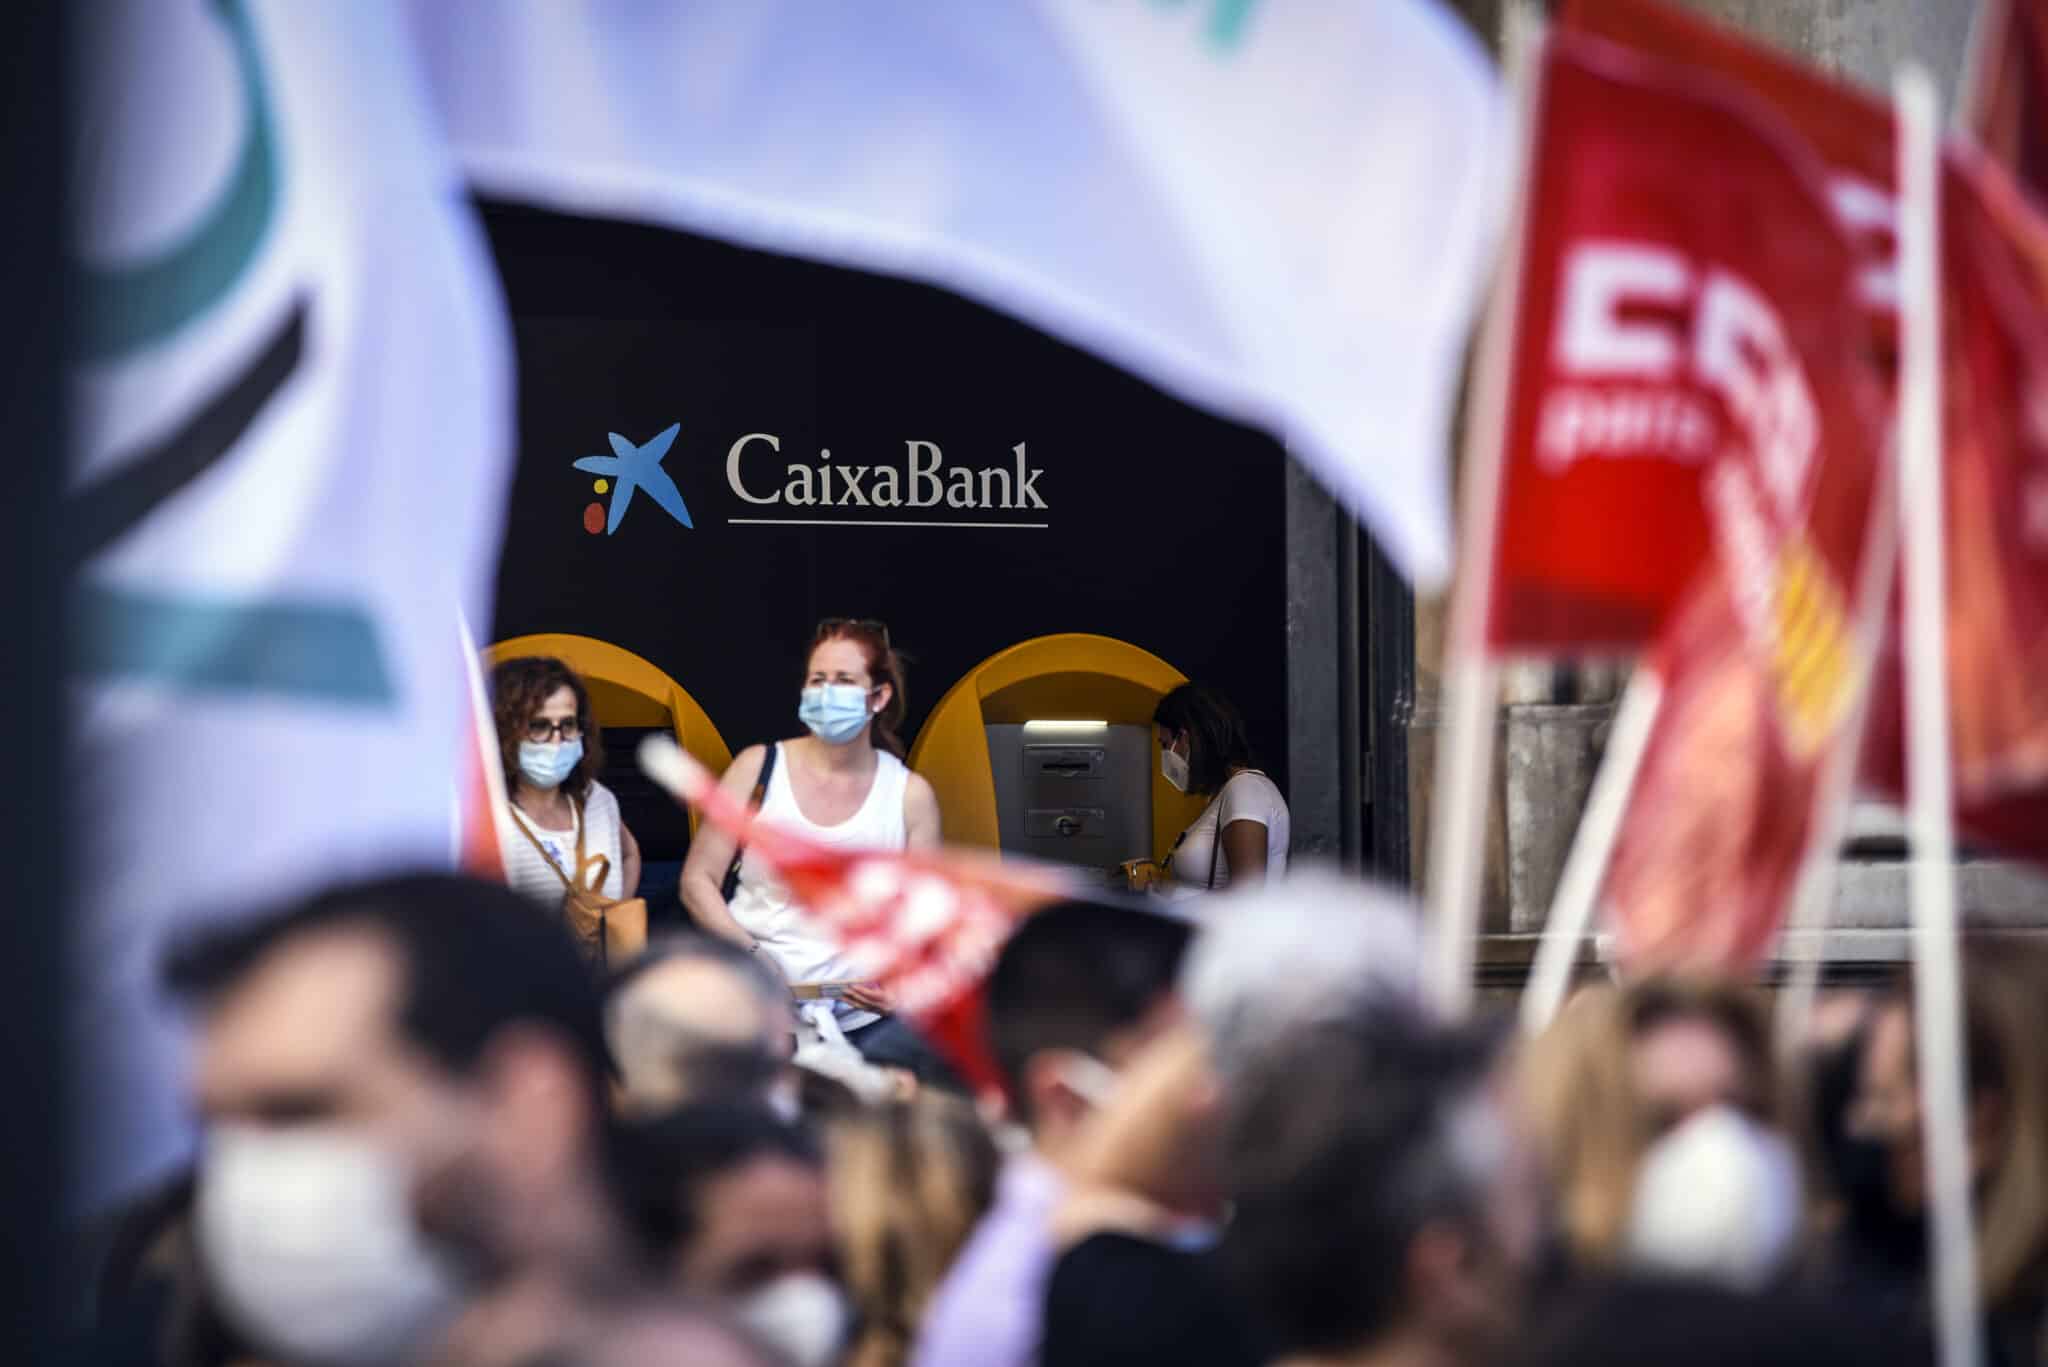 Un grupo de empleados de CaixaBank protesta contra la entidad financiera por el ERE previsto para miles de empleados, a 22 de junio de 2021, en Valencia